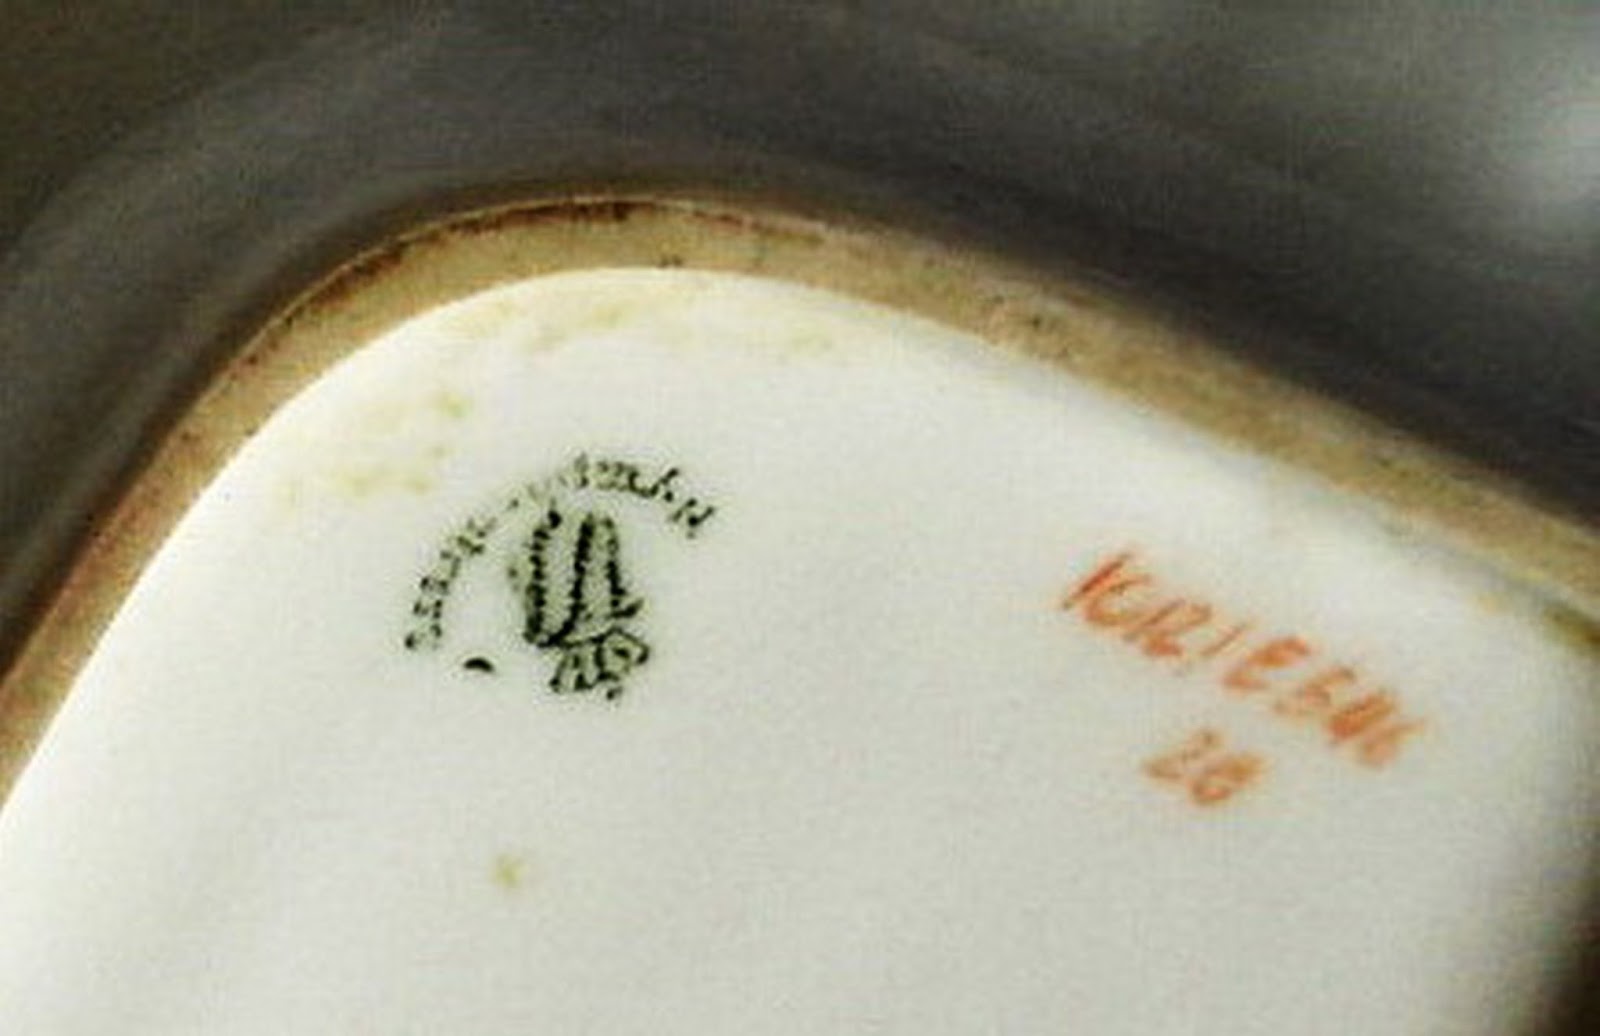 Dating nymphenburg porcelain marks